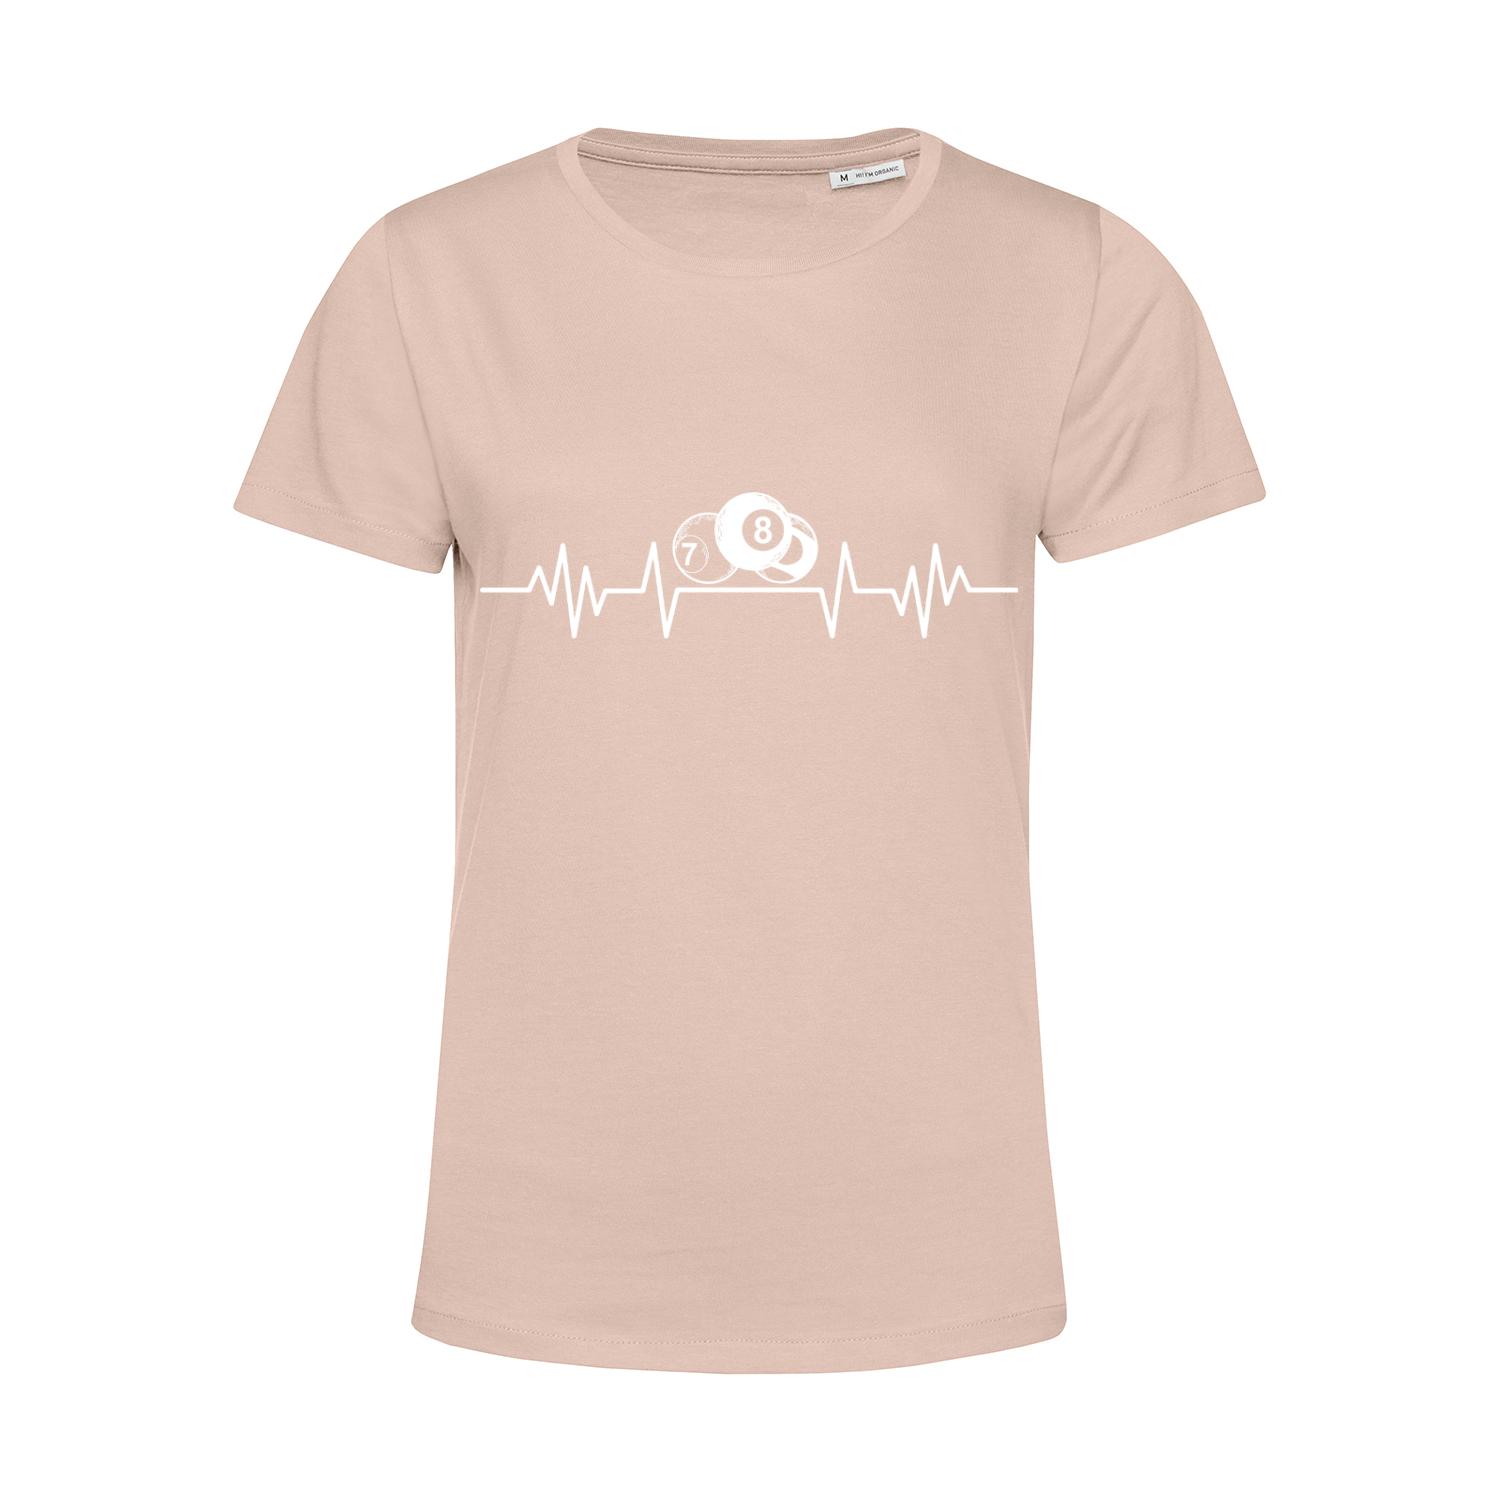 Nachhaltiges T-Shirt Damen Billard weiße Herzstromkurve